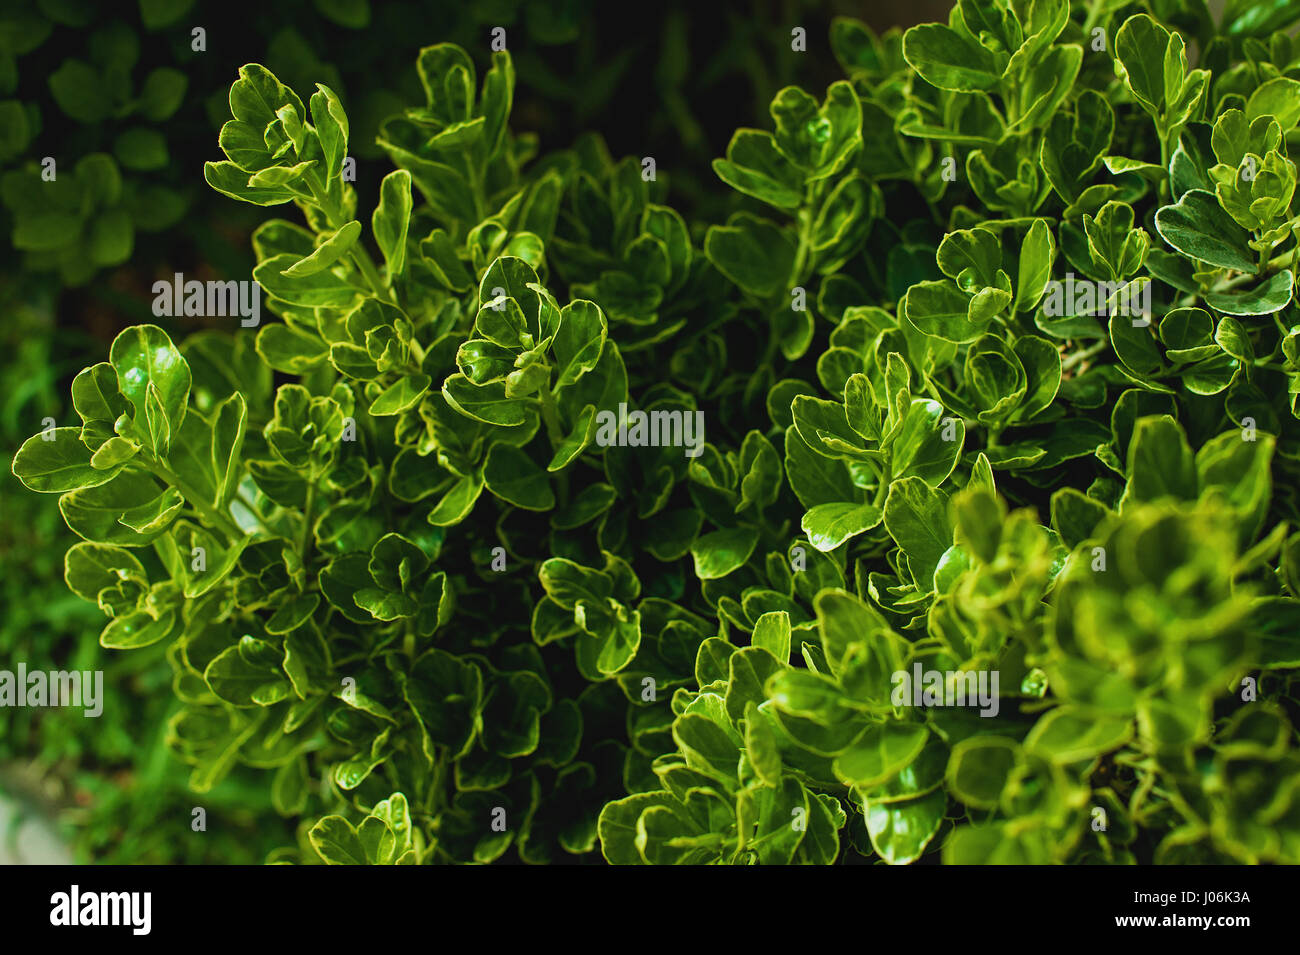 Diseño creativo de hojas verdes. Sentar planas. Antecedentes de la naturaleza Foto de stock